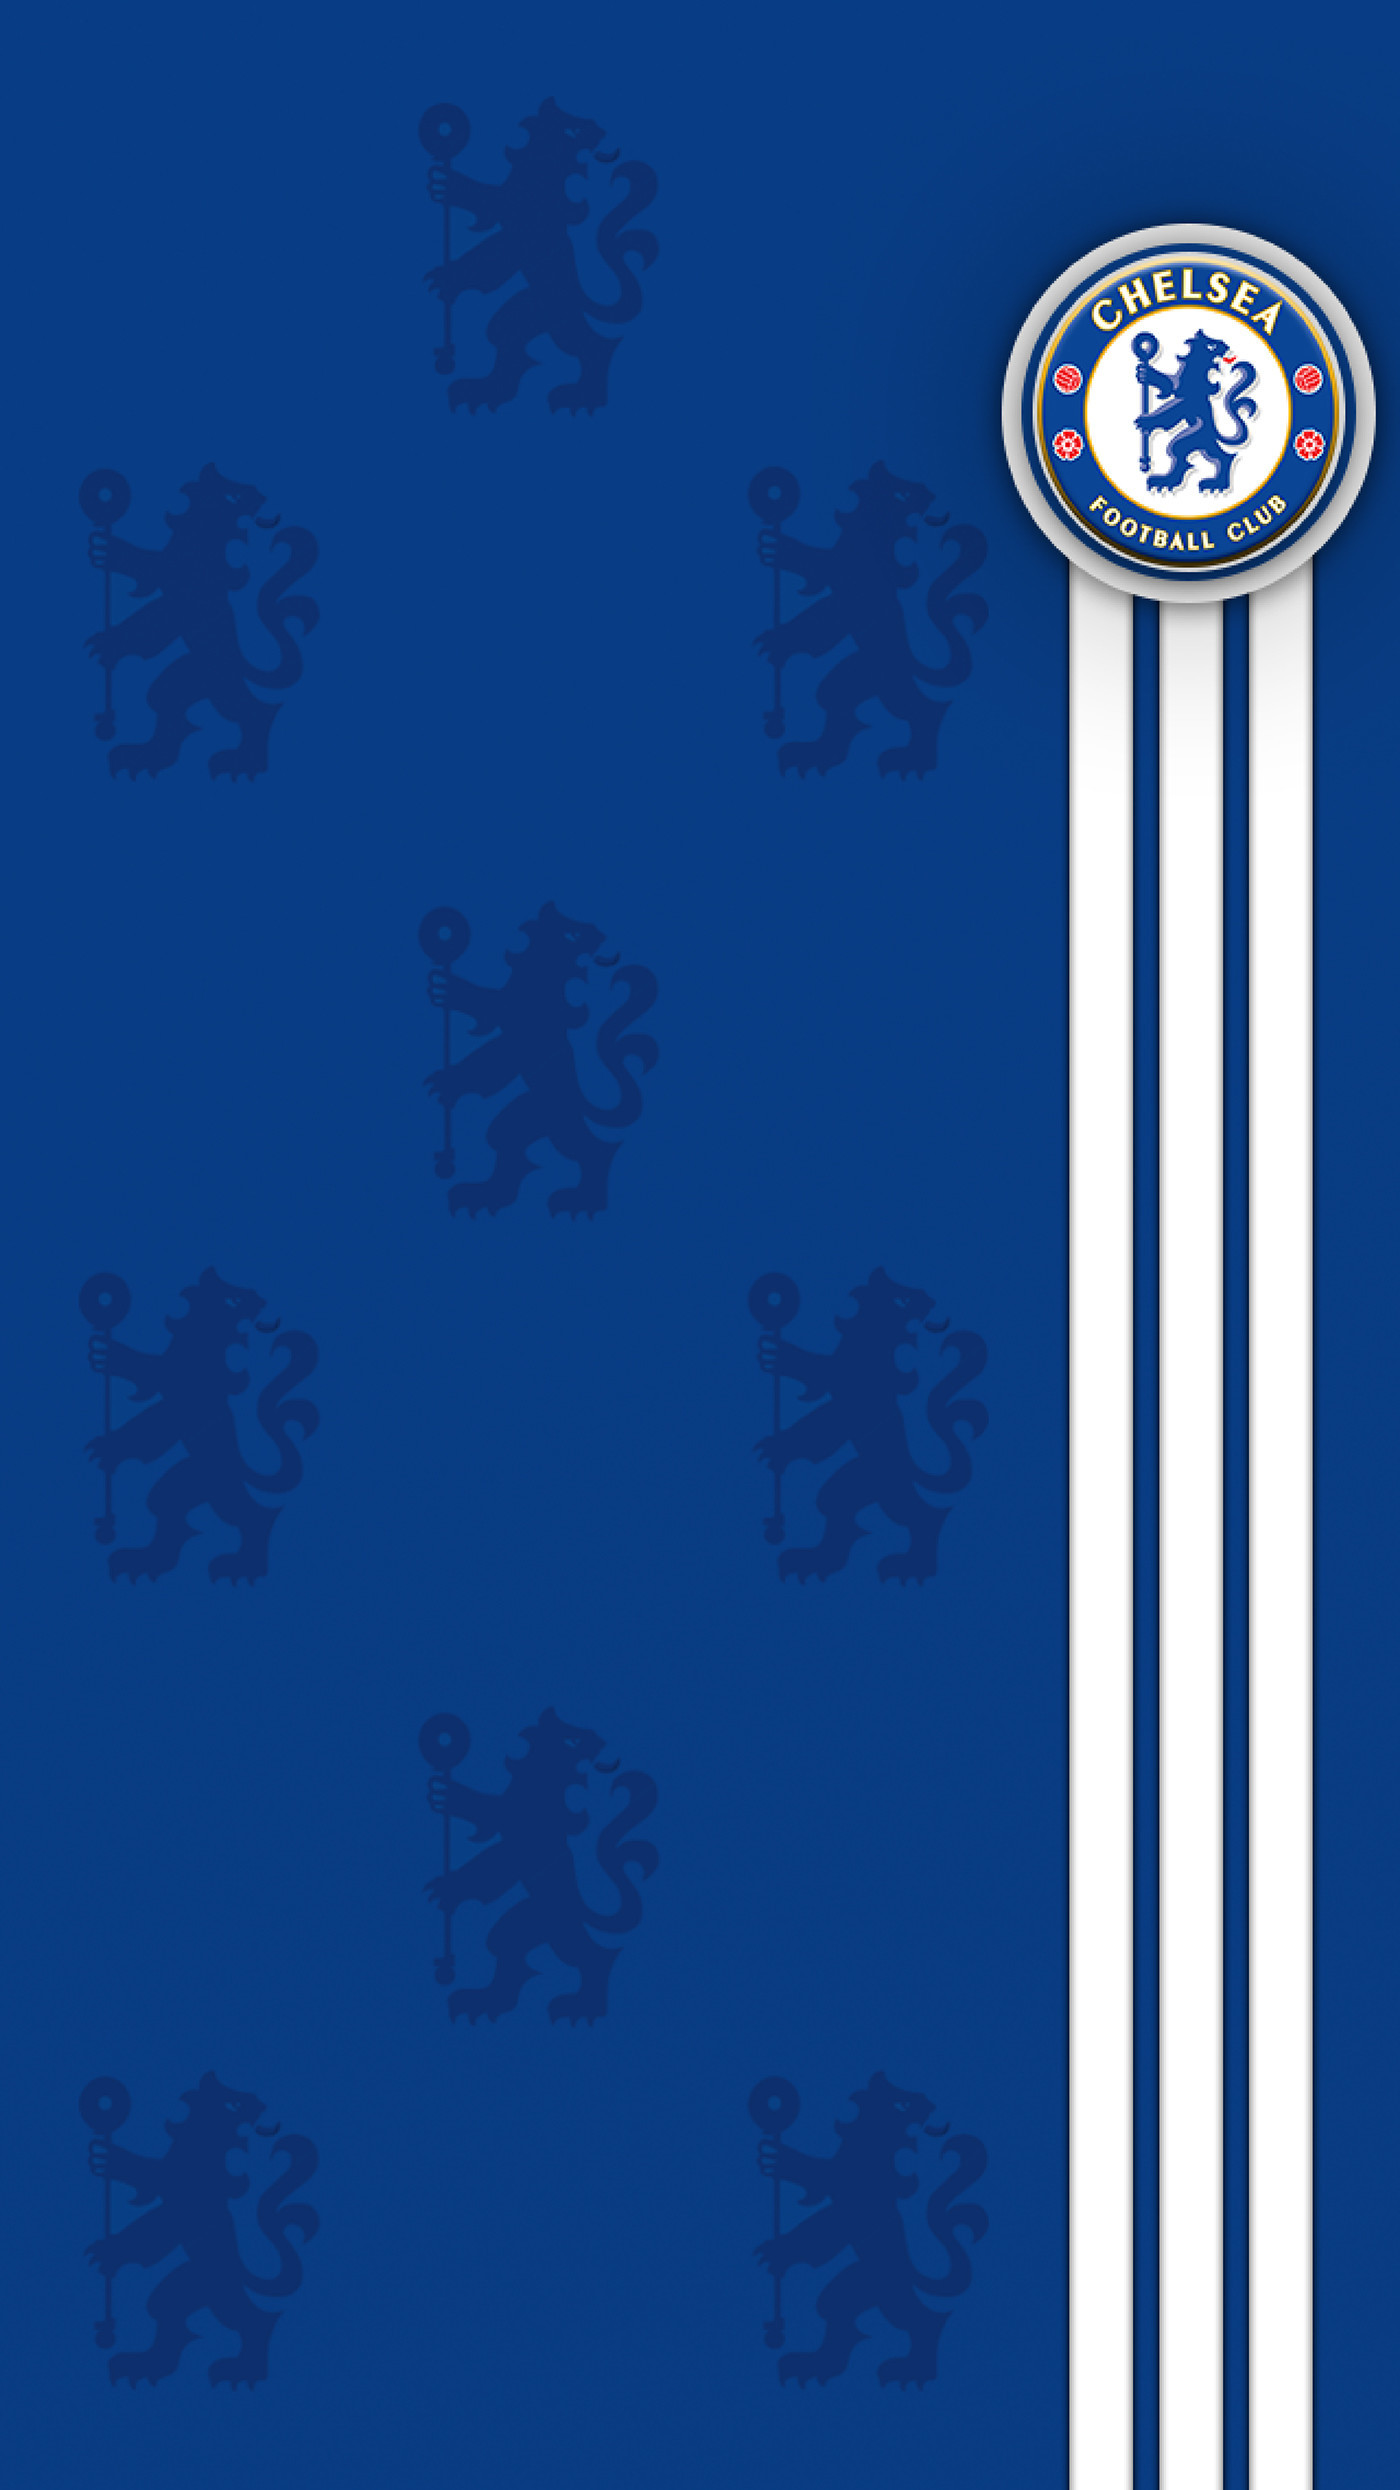 Chelsea - Chelsea Fc - HD Wallpaper 